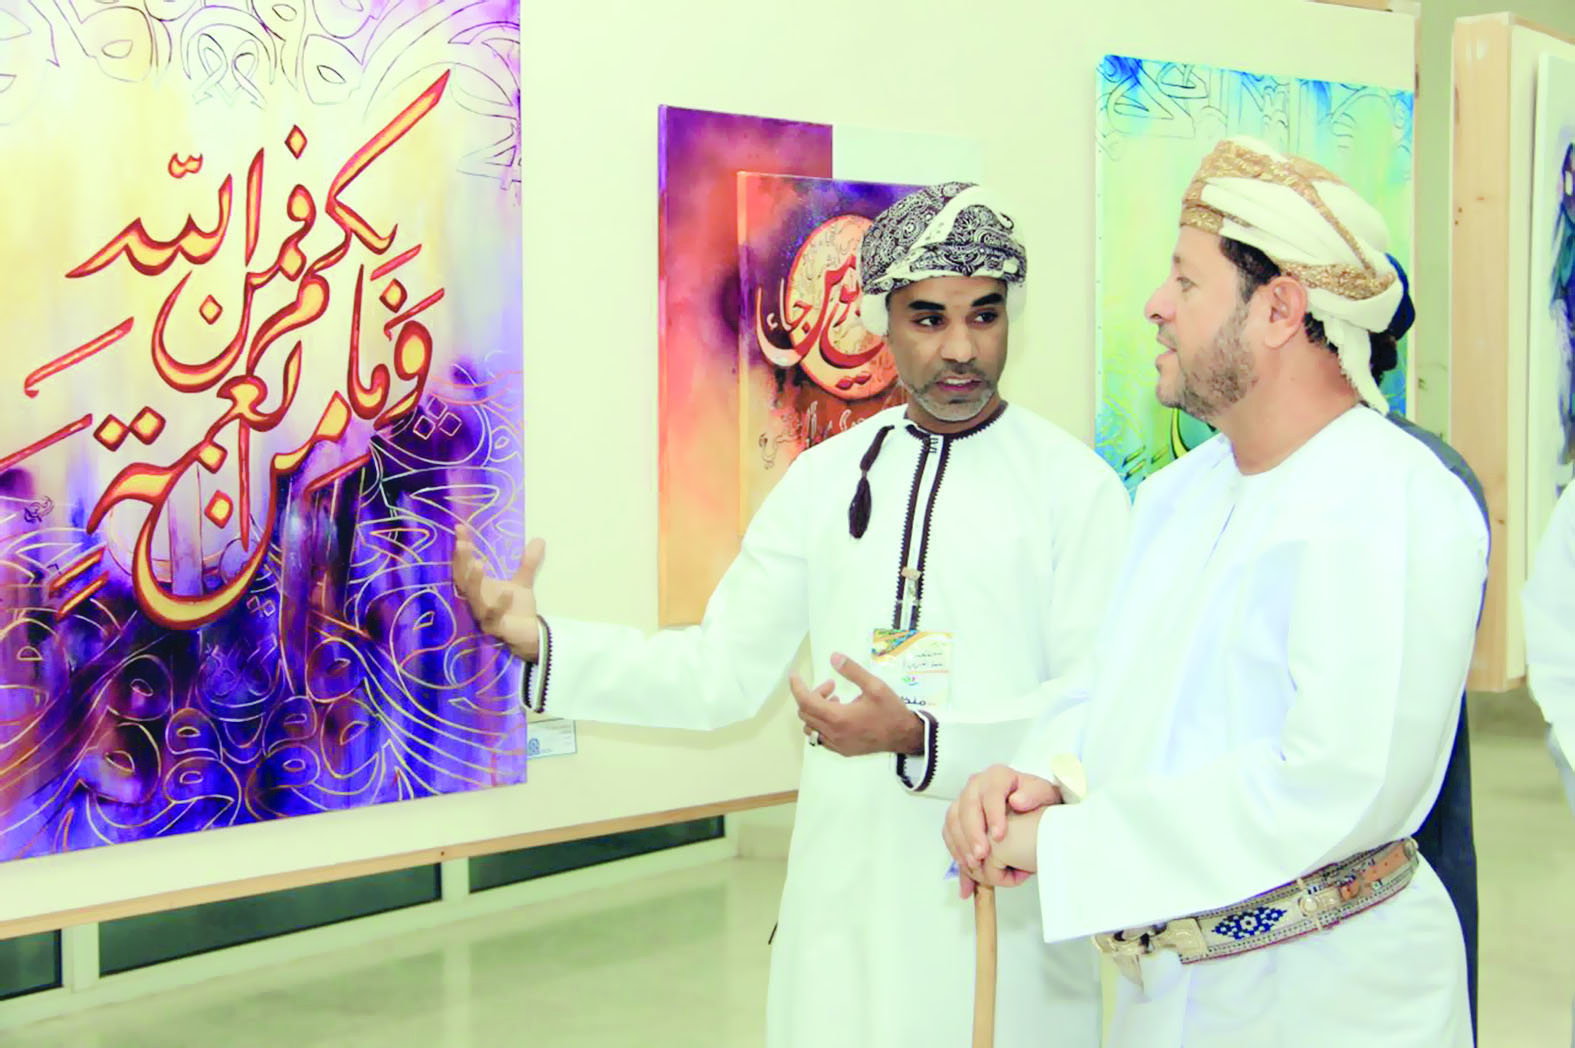 برعاية والي بدبد

معرض للفنون الجميلة والخط العربي بالكلية العلمية للتصميم